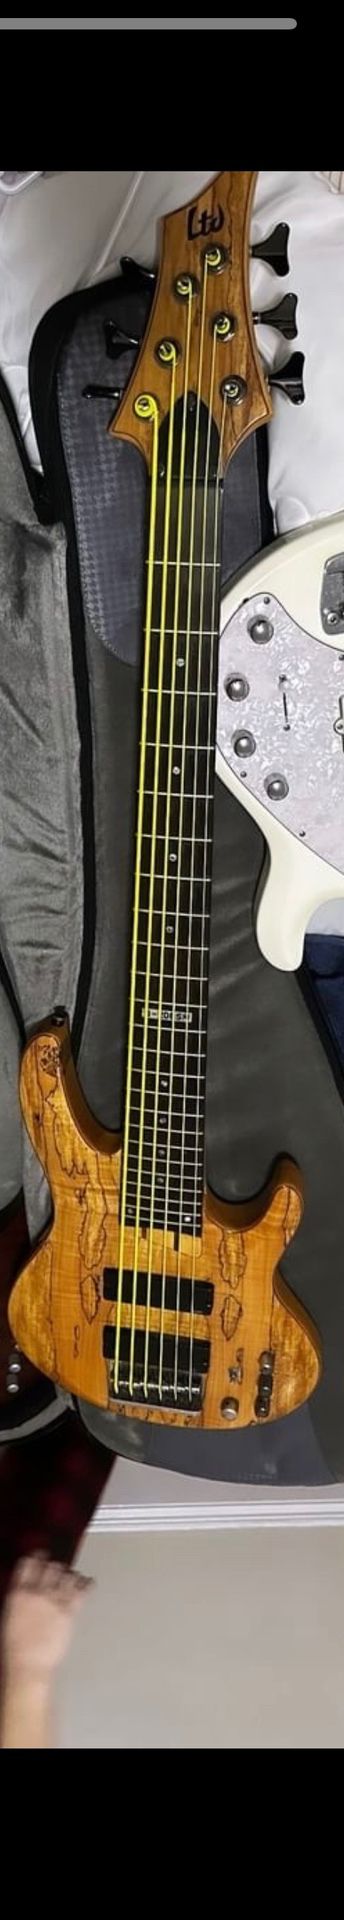 Ltd Bass Guitar 6 String 